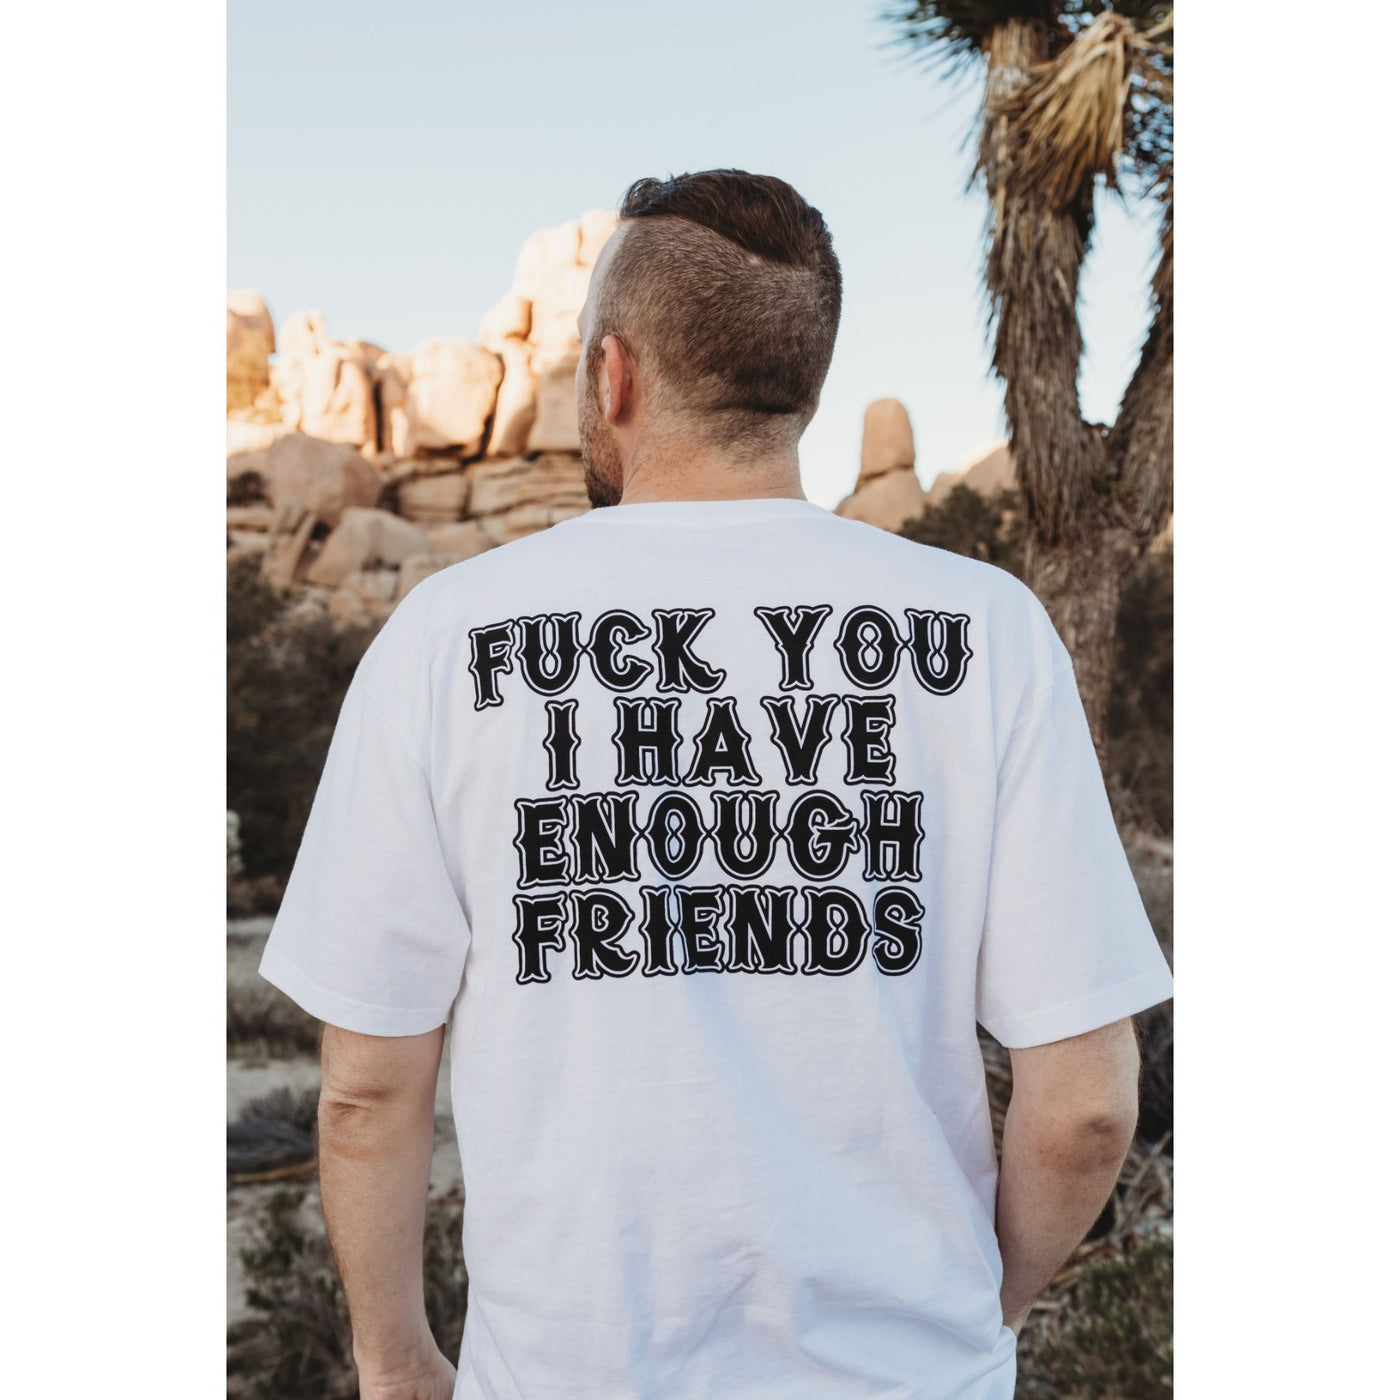 Enough Friends Limited T-Shirt - Born Scum